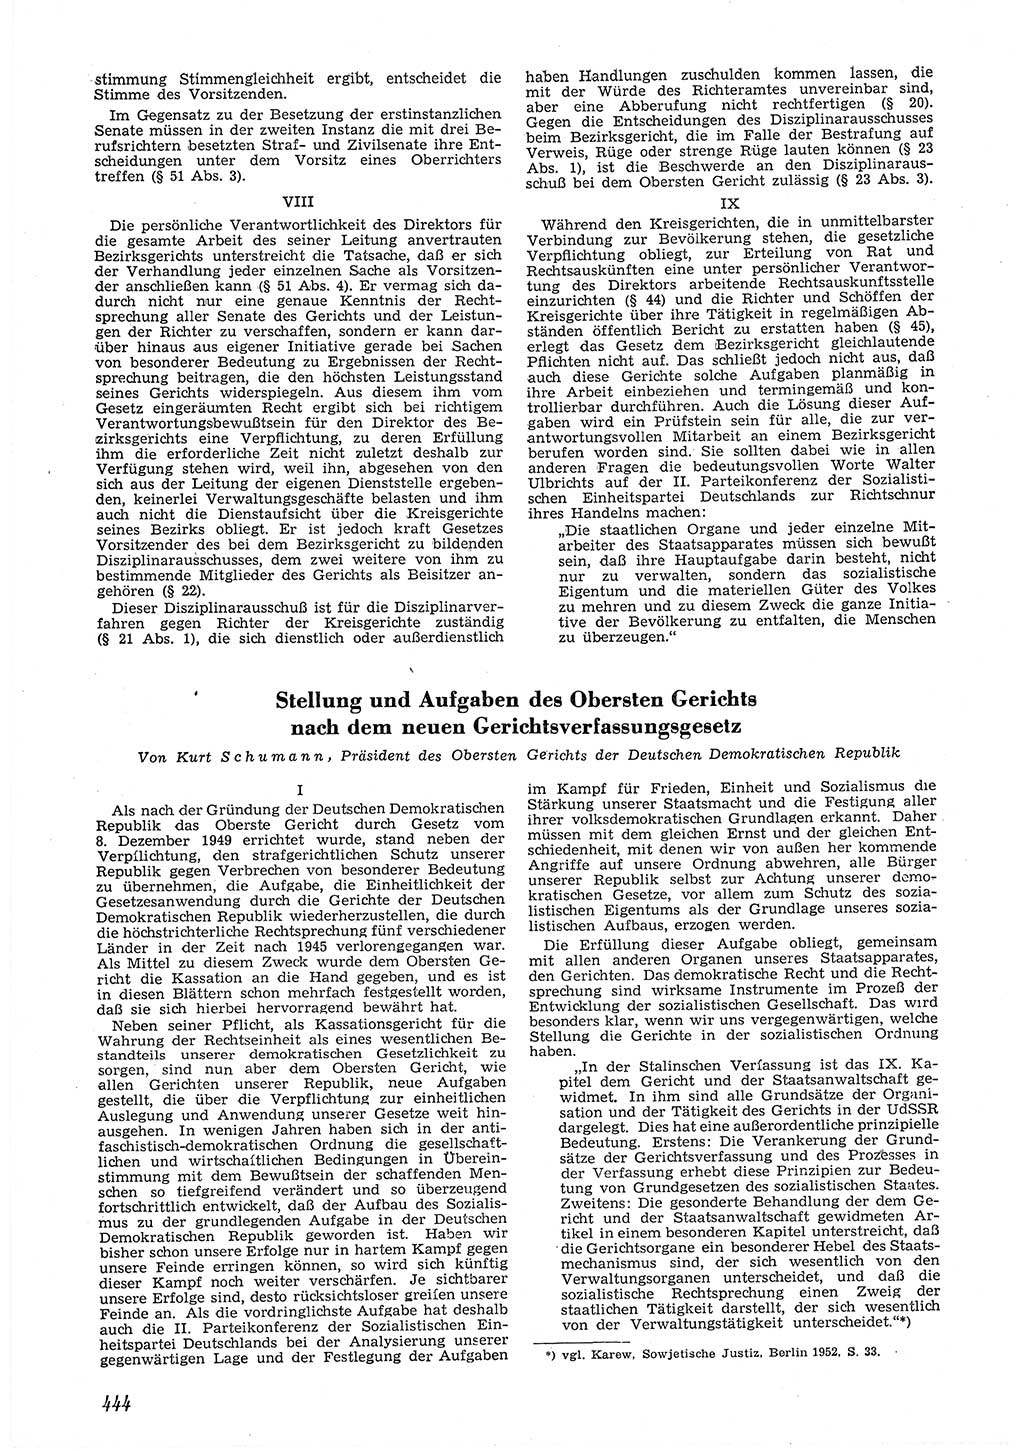 Neue Justiz (NJ), Zeitschrift für Recht und Rechtswissenschaft [Deutsche Demokratische Republik (DDR)], 6. Jahrgang 1952, Seite 444 (NJ DDR 1952, S. 444)